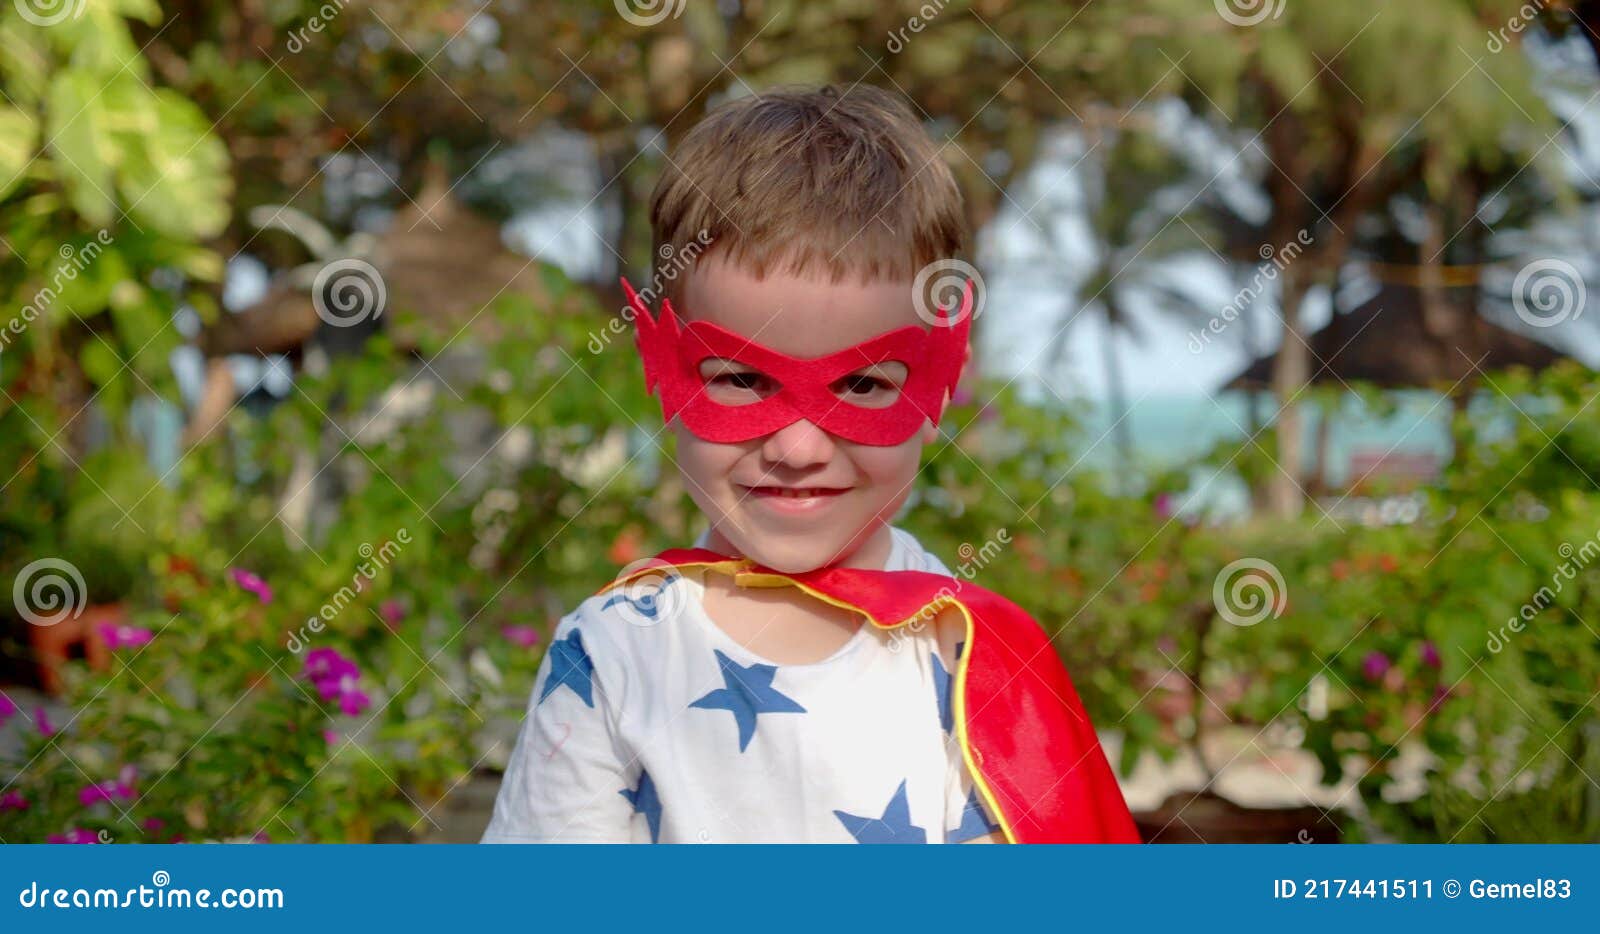 Una foto di un bambino vestito da supereroe